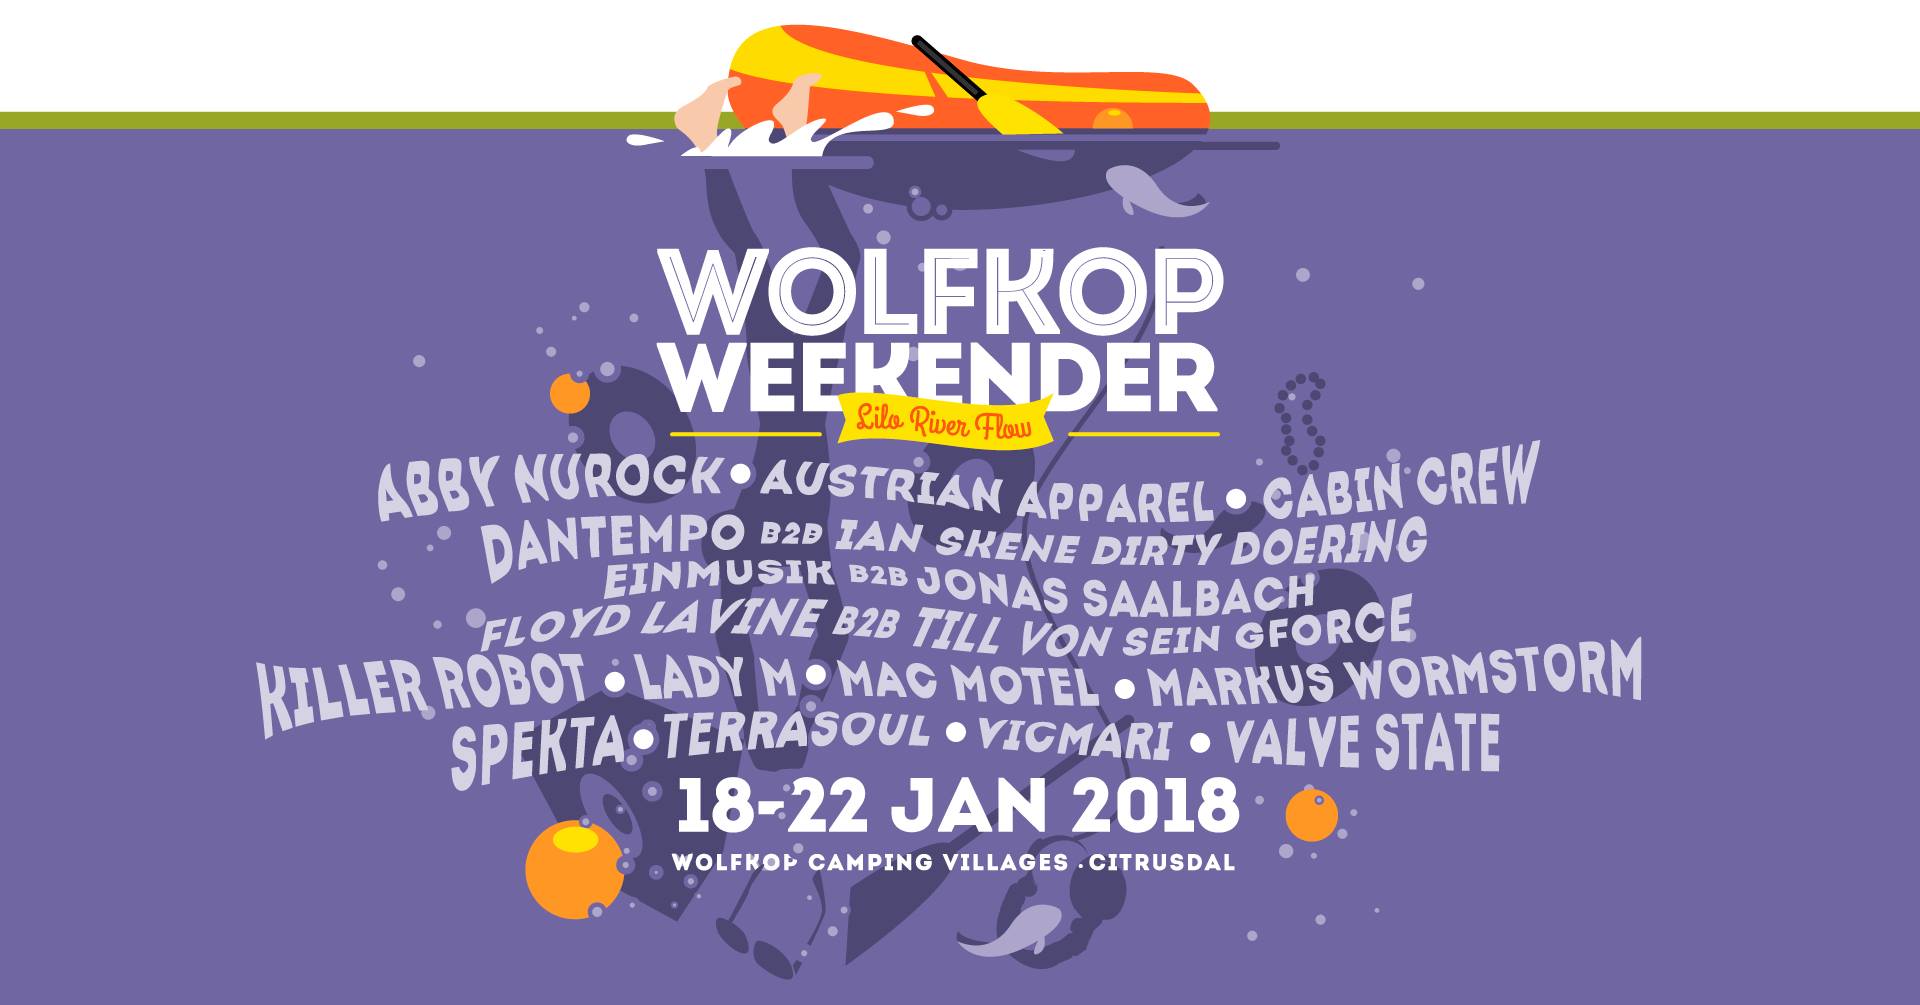 South Africa's Wolfkop Weekender 2018